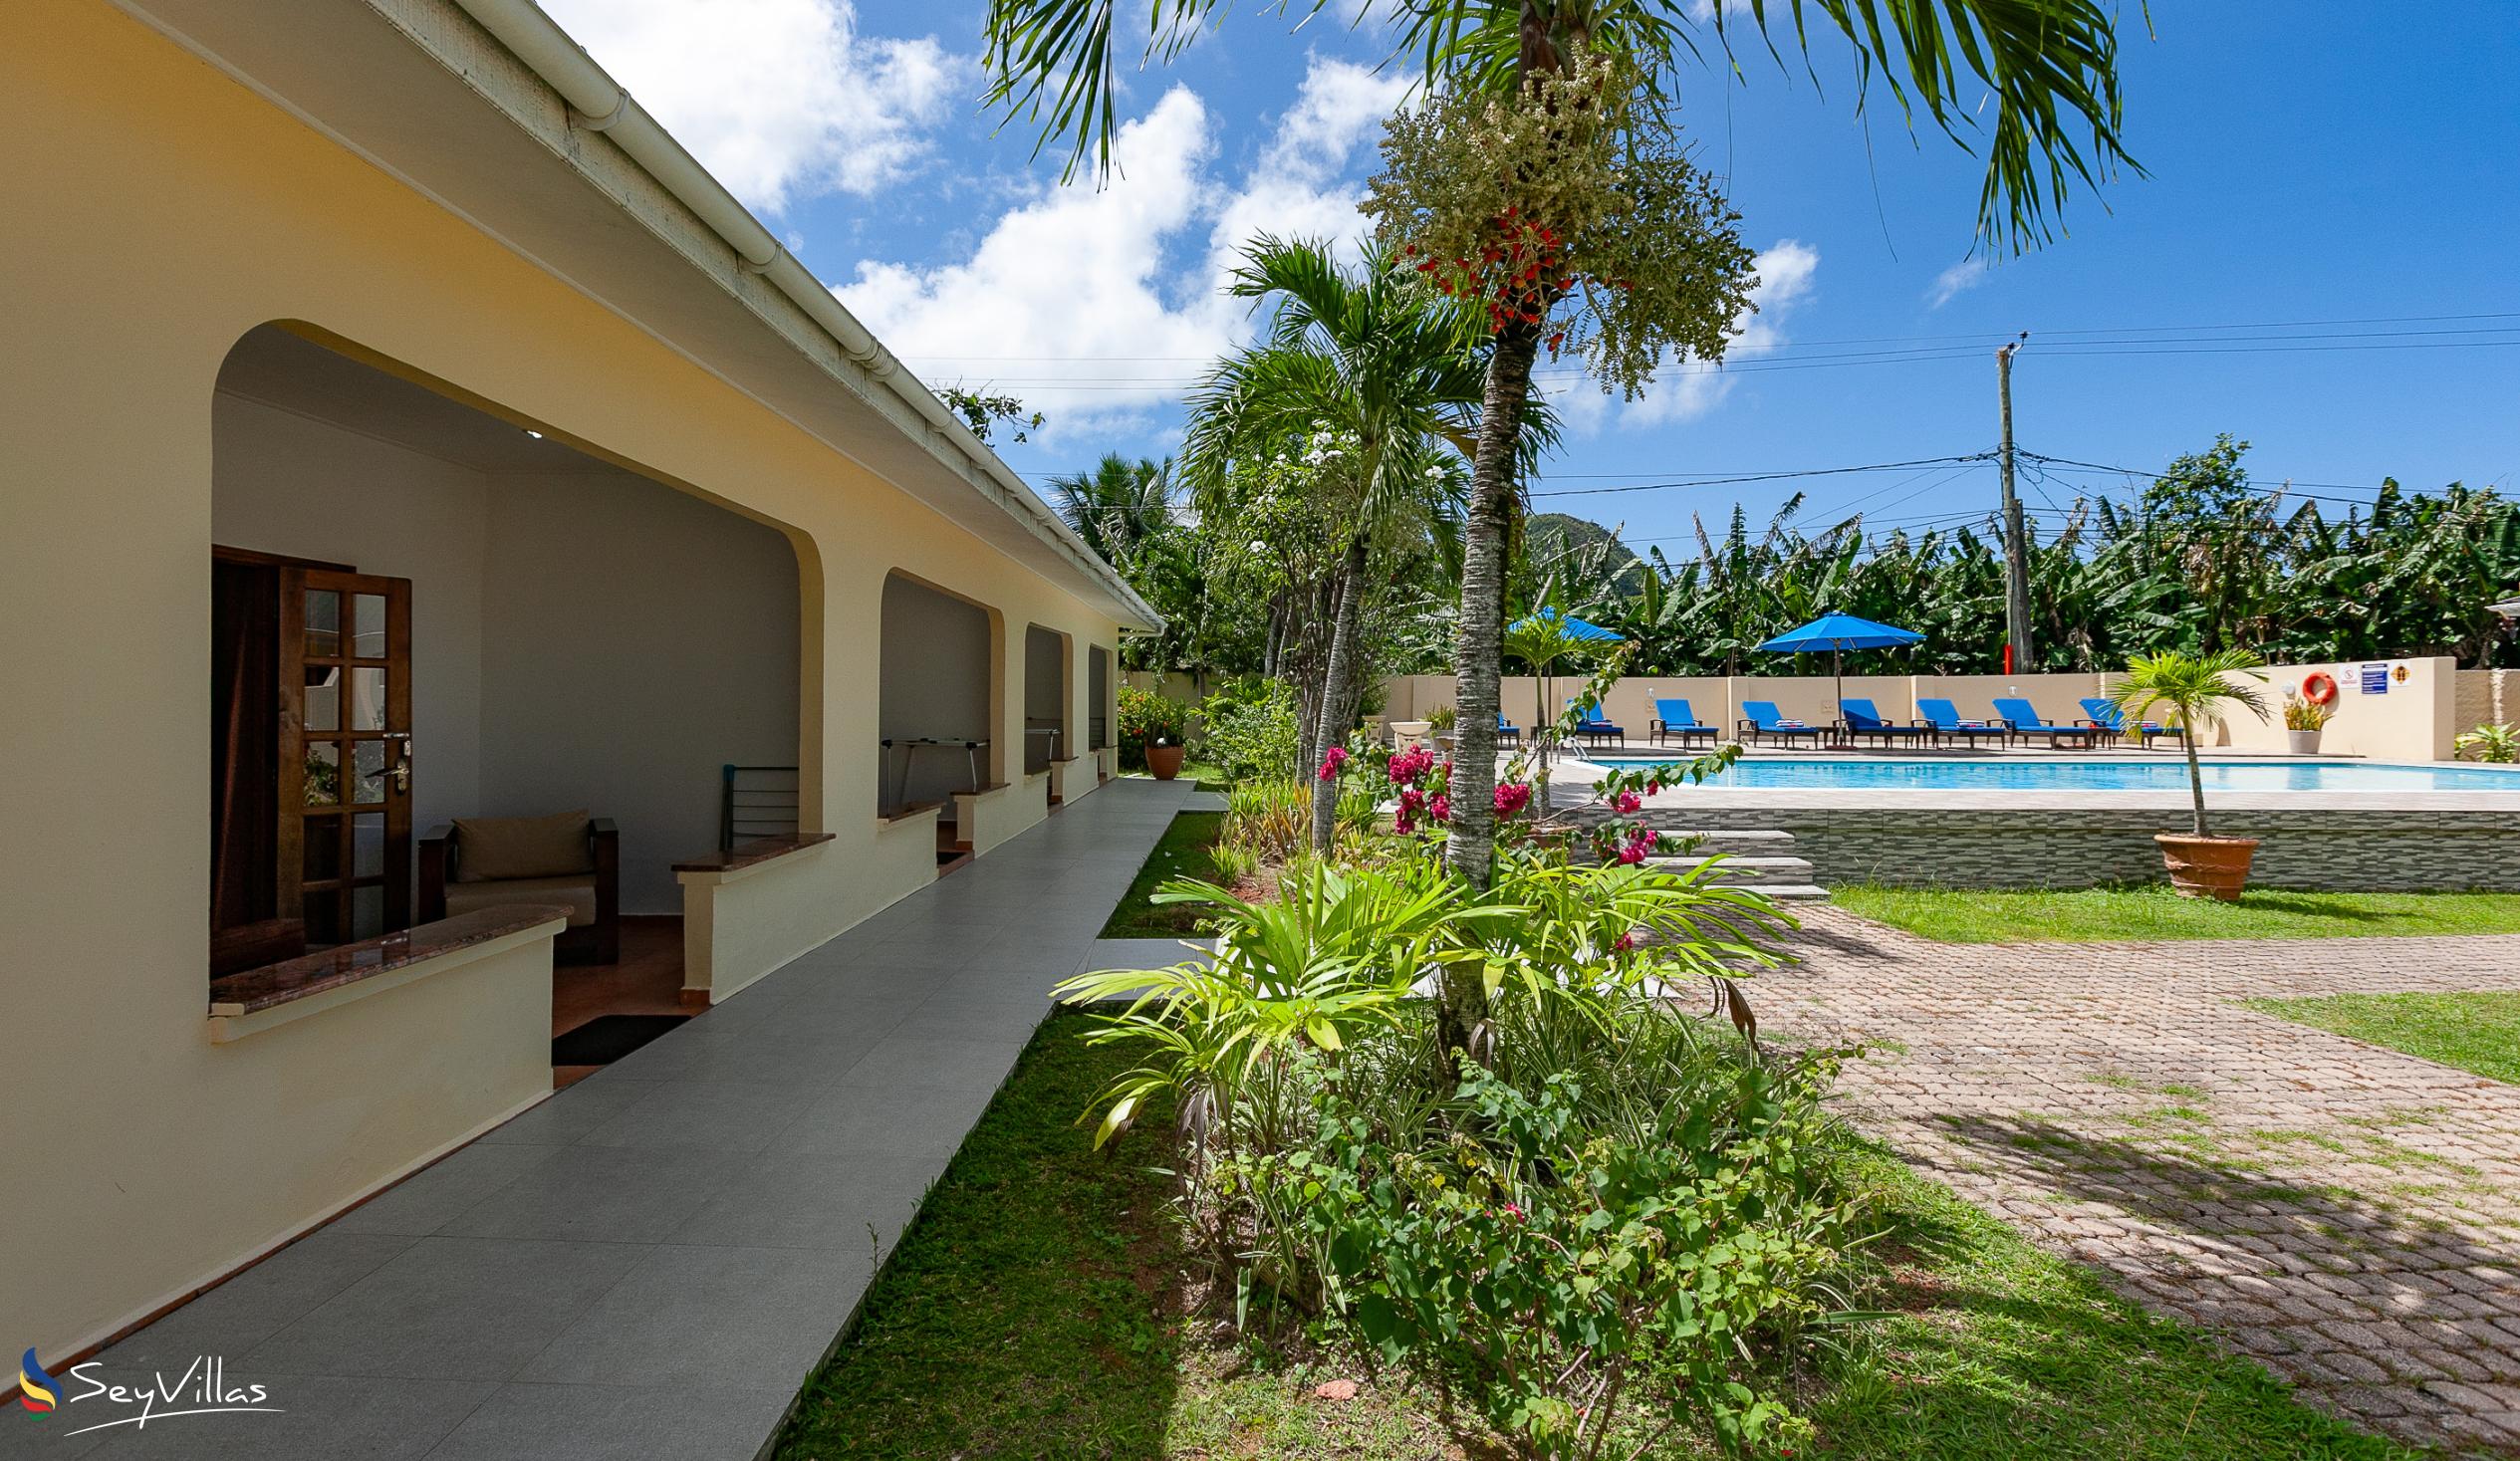 Foto 9: Britannia Hotel - Aussenbereich - Praslin (Seychellen)